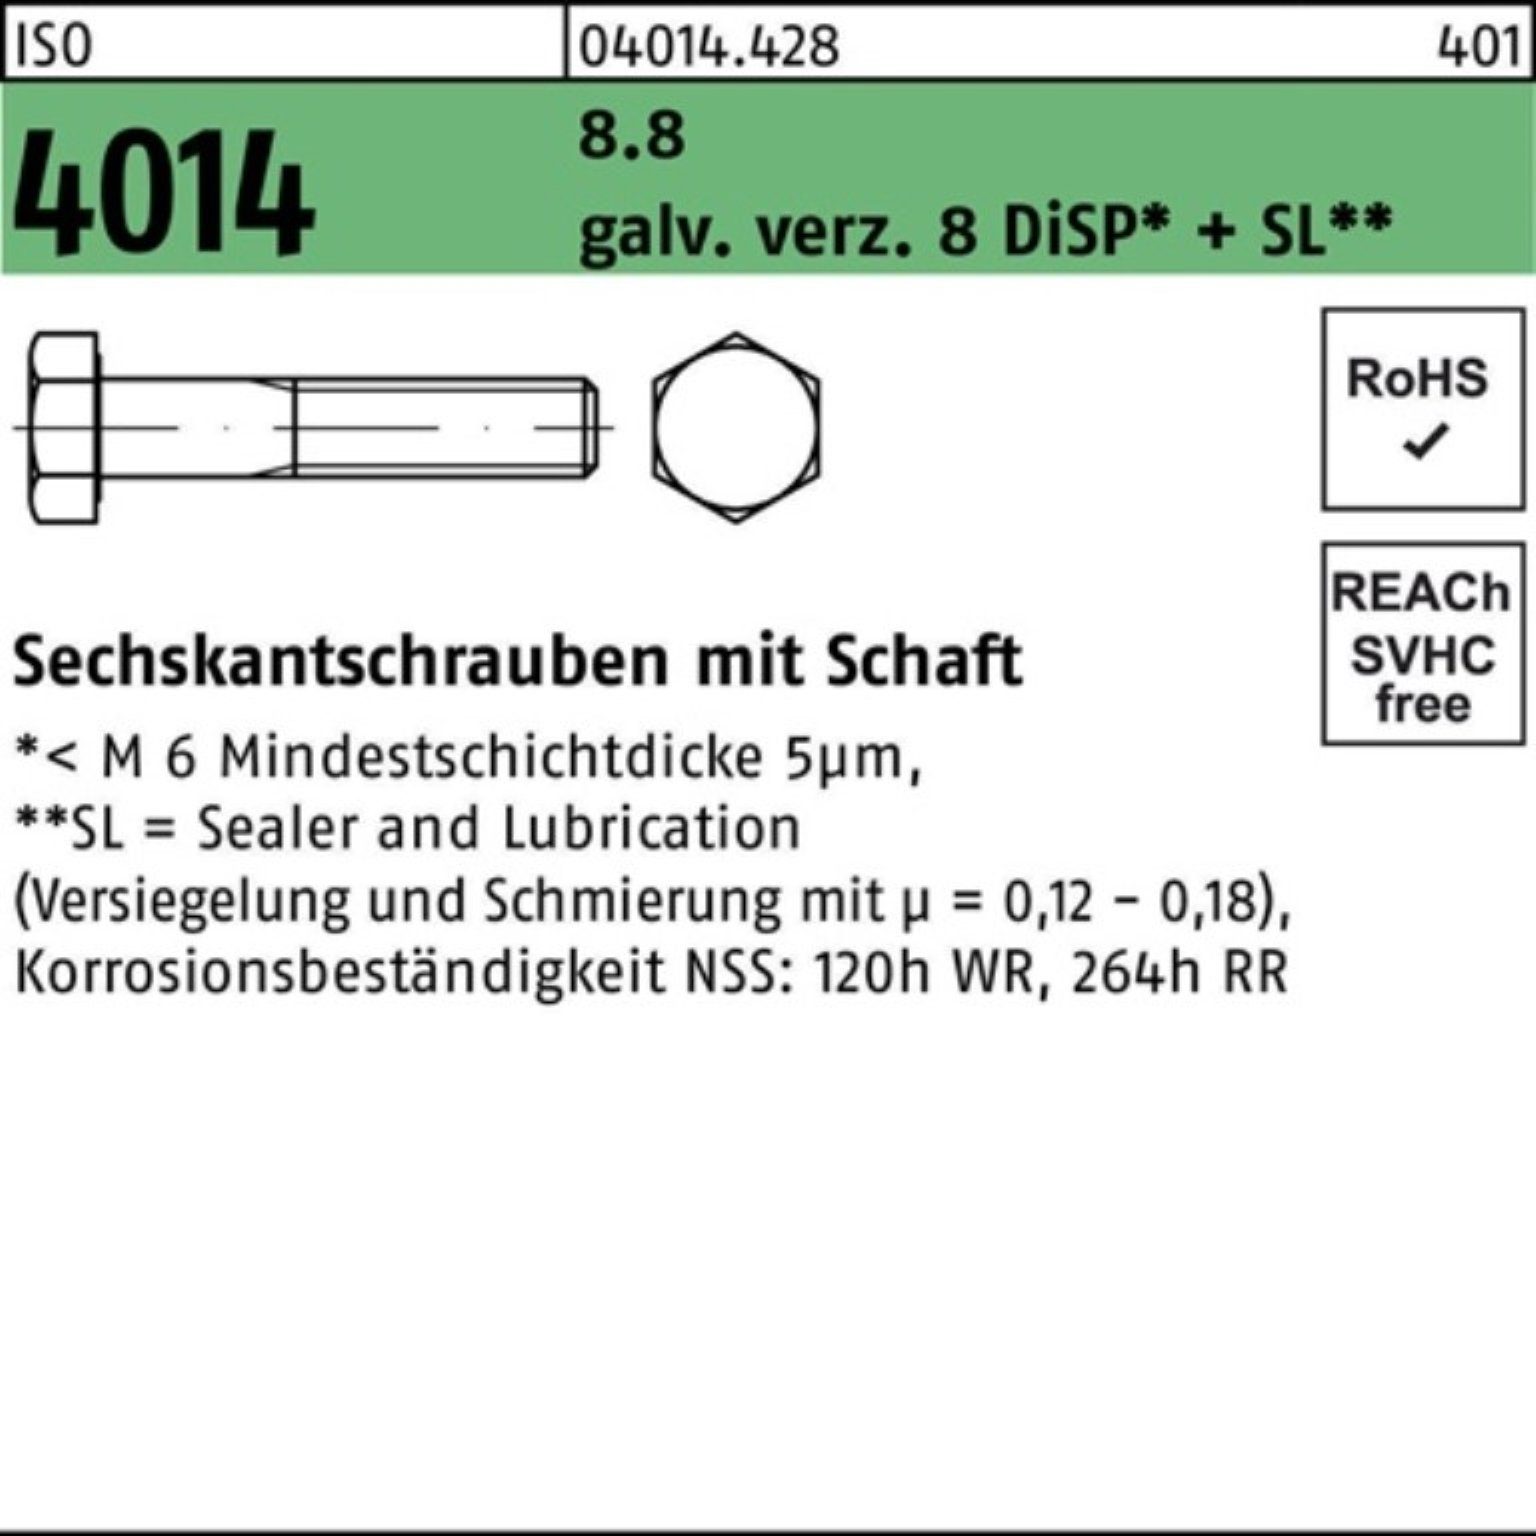 Bufab Sechskantschraube 100er Pack Sechskantschraube ISO 4014 Schaft M12x120 8.8 galv.verz. 8